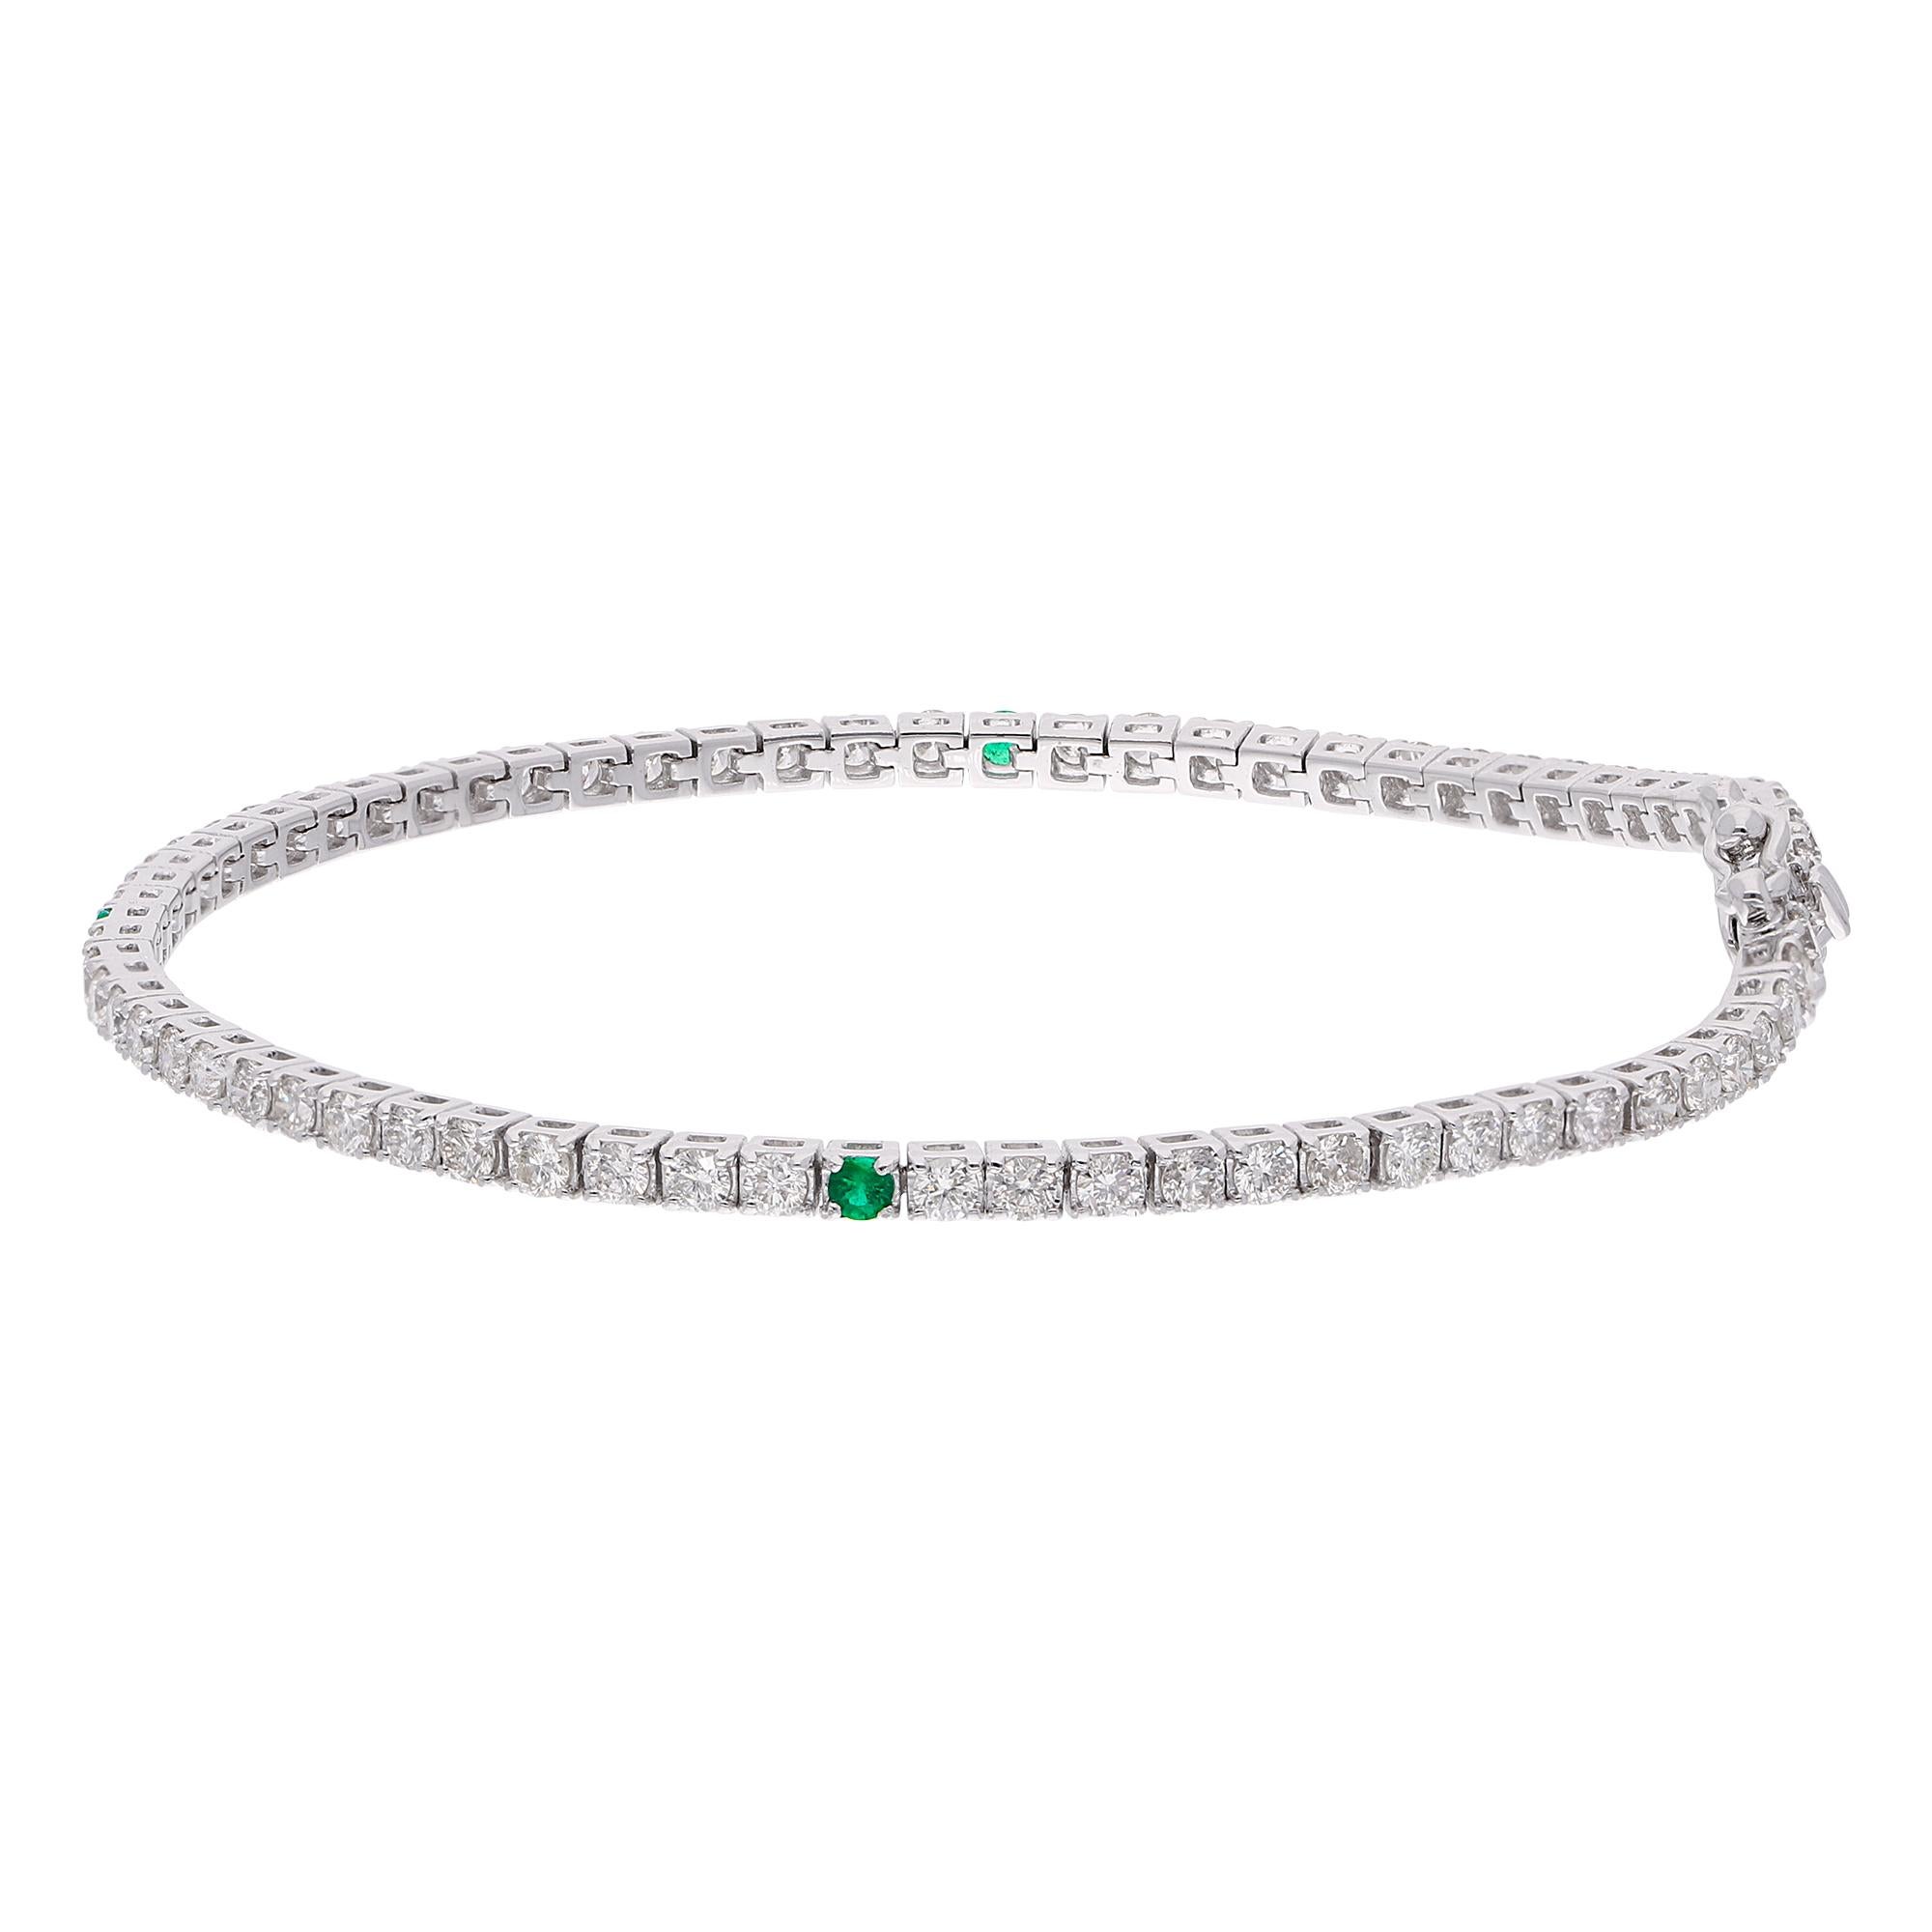 Faites preuve d'une élégance intemporelle avec ce superbe bracelet Tennis Emerald Diamond de notre collection. La teinte verte des émeraudes est magnifiquement contrastée par la brillance des diamants, créant ainsi un spectacle saisissant de